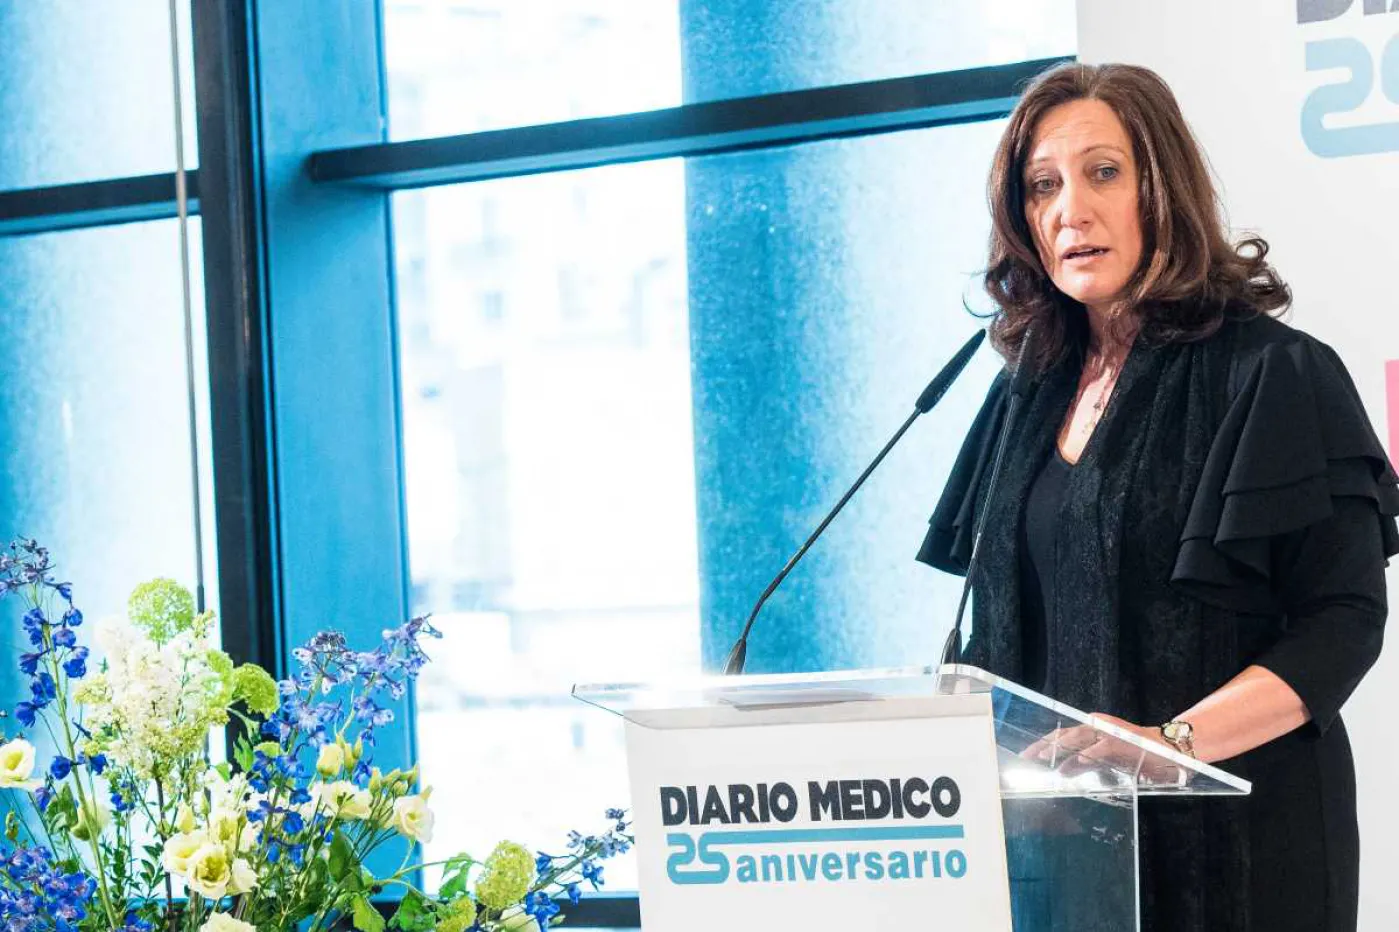 Carmen Fernández, exdirectora de Diario Médico, en un acto con motivo del 25 aniversario del periódico en 2017.